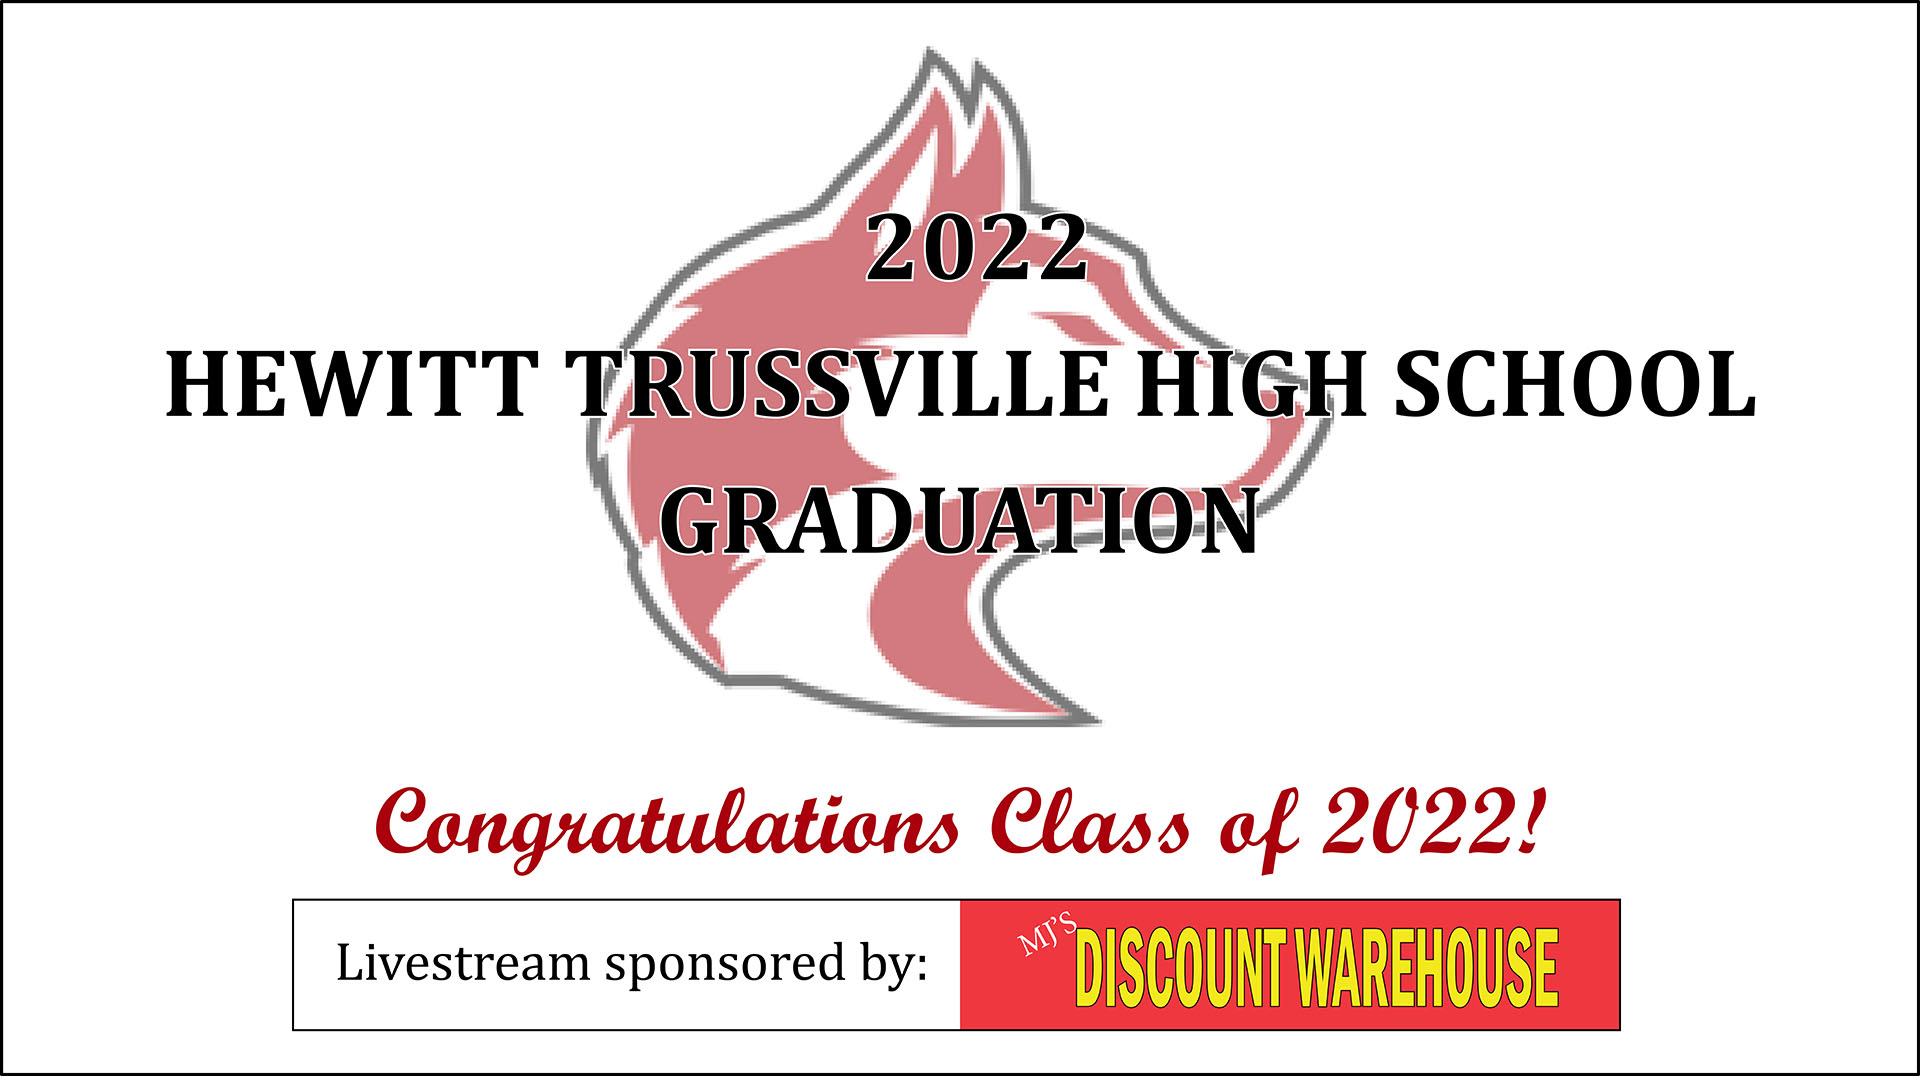 VIDEO: Hewitt-Trussville High School Graduation 2022